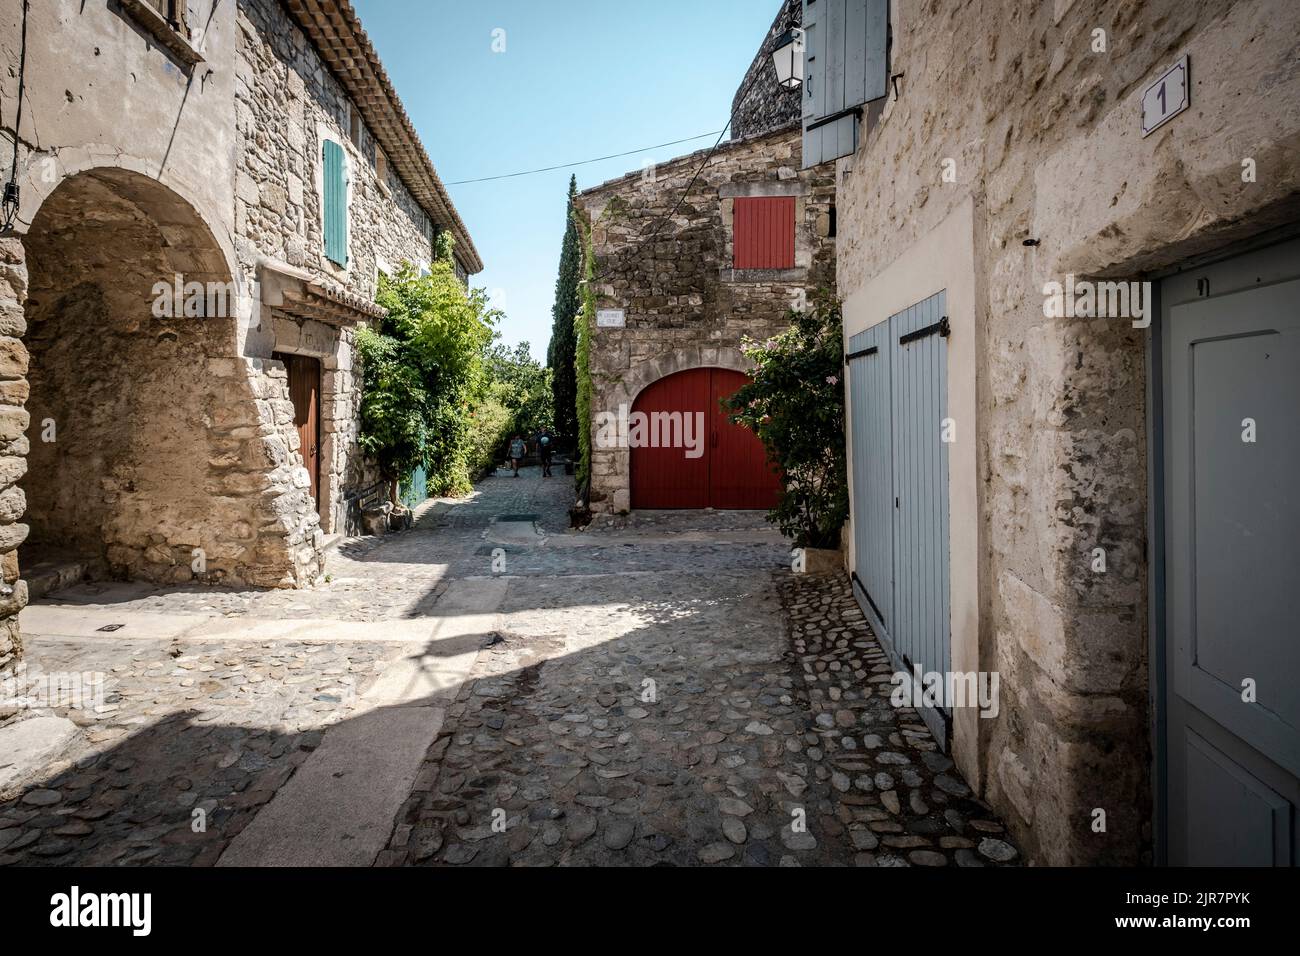 rue du village d'Aigueze, petit village situé au sud de la France dans le département du Gard de la région française Languedoc-Roussillon. Banque D'Images